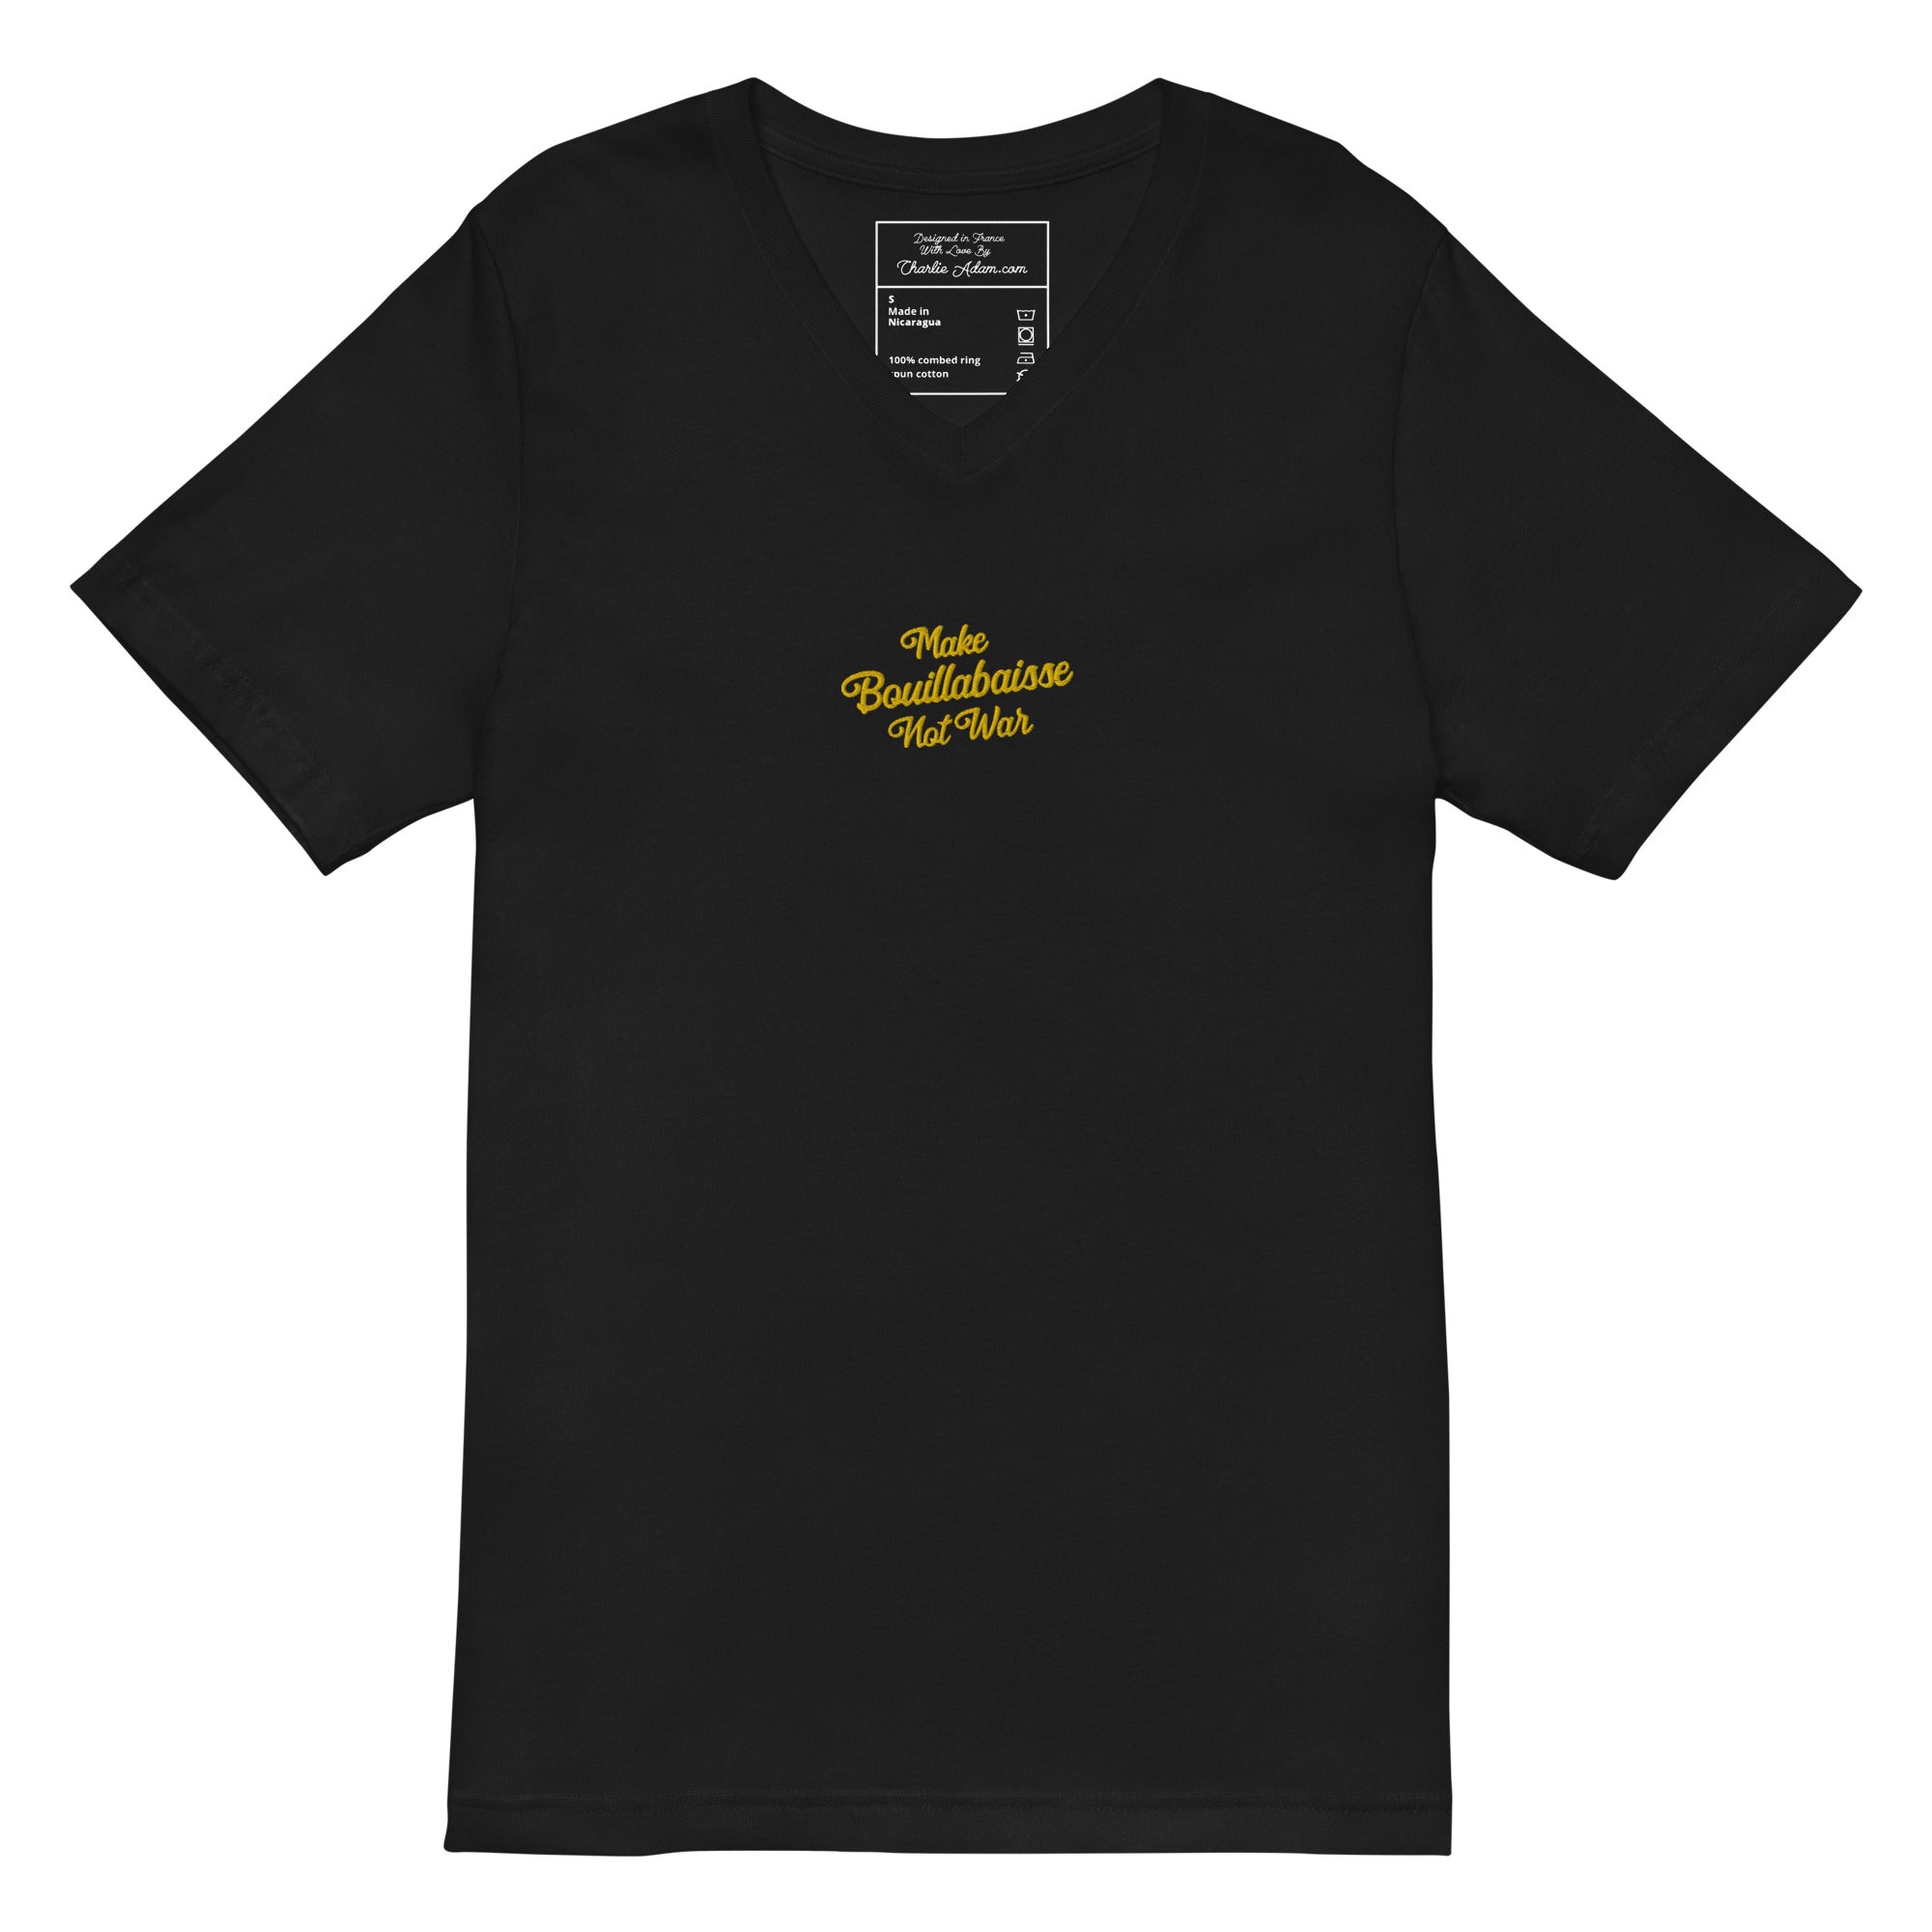 T-shirt unisexe Col V T-Shirt Make Bouillabaisse Not War brodé